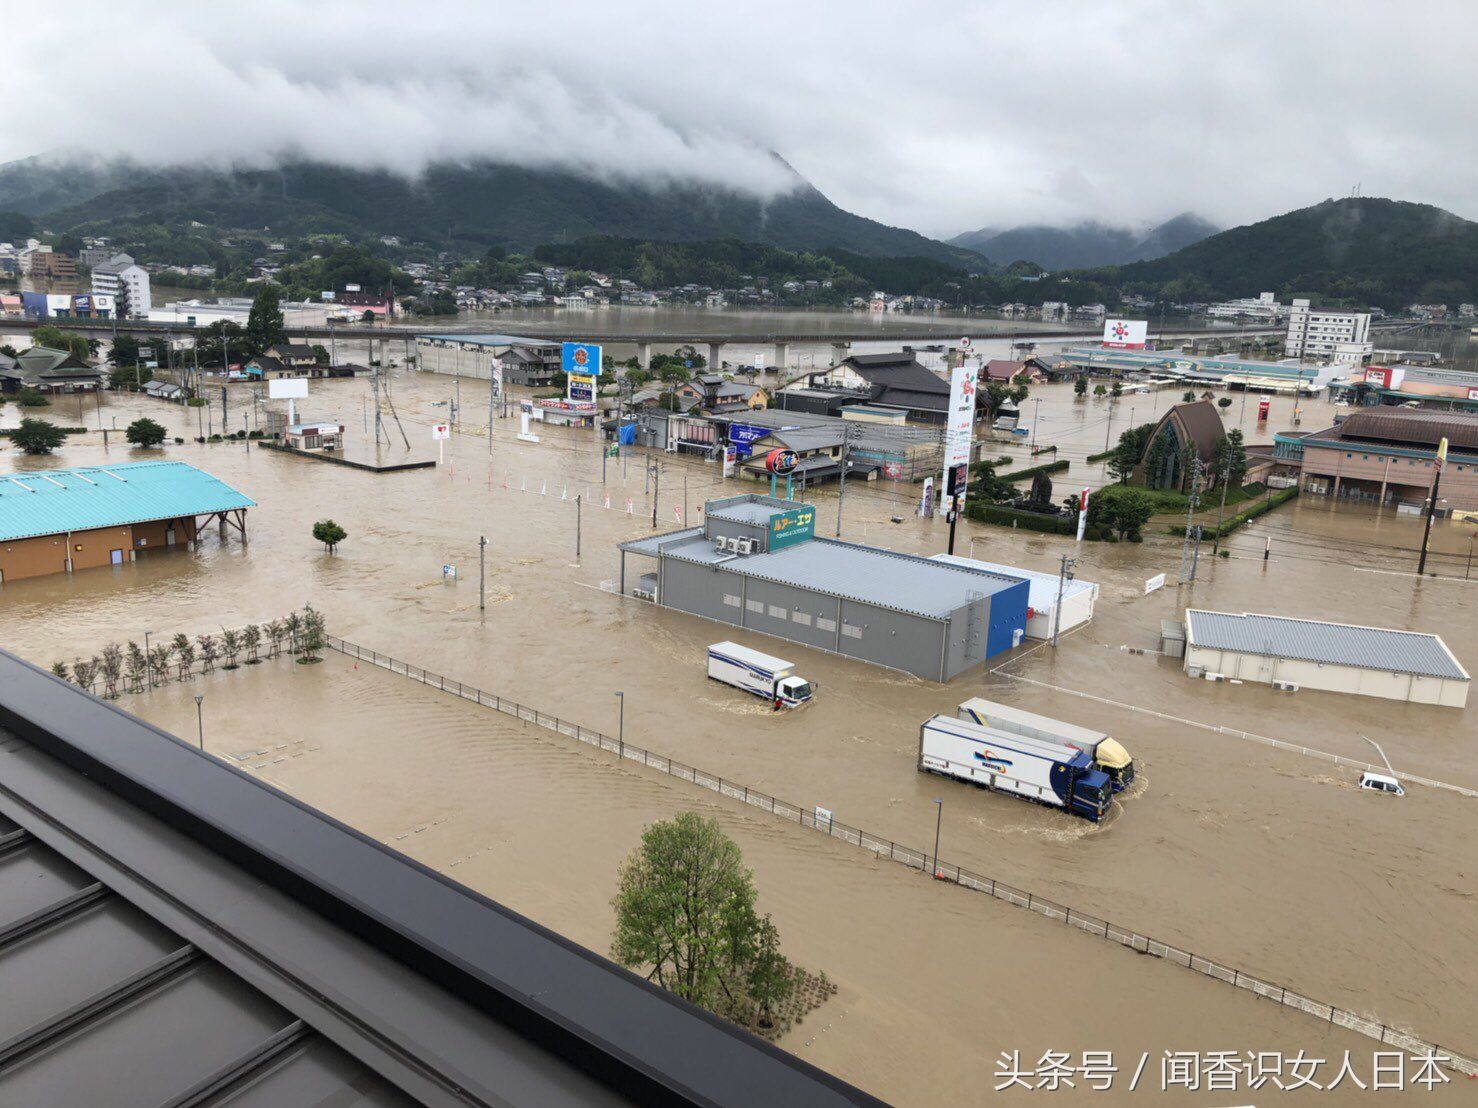 日本关西地区最近不能去,连续大雨已经让部分